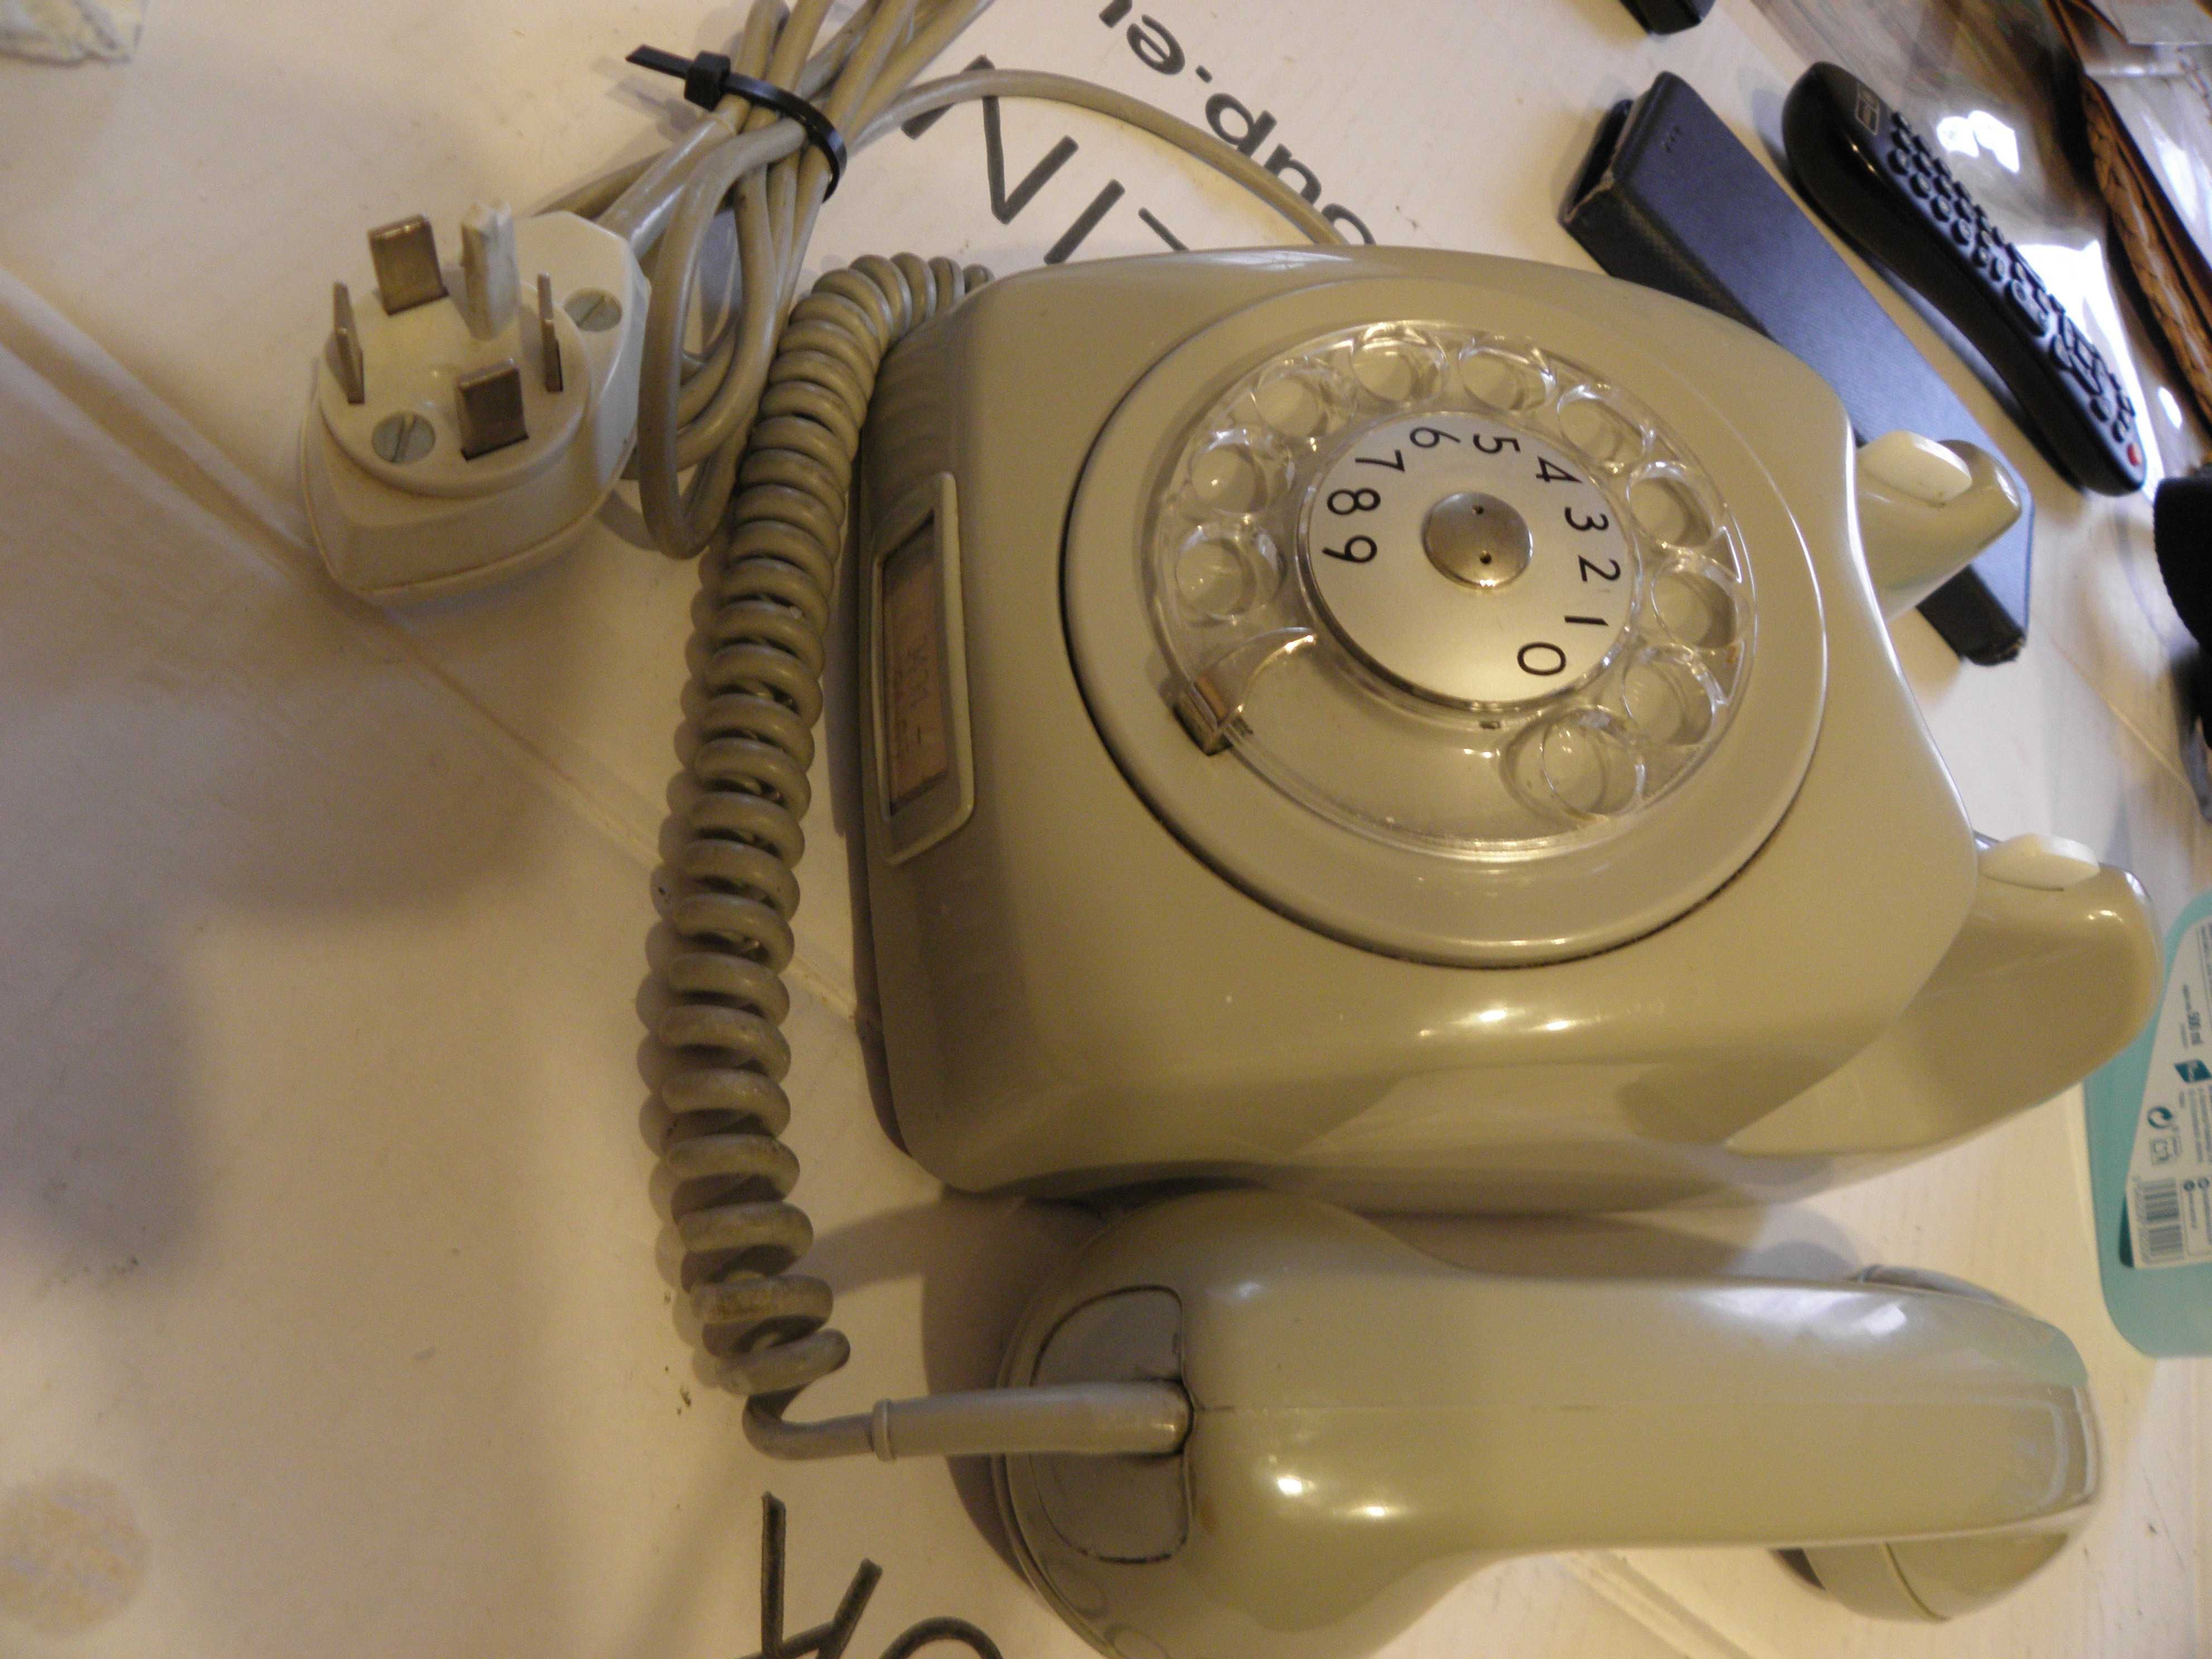 Stary stacjonarny telefon   szwedkiej  firmy Erikson  lata70 - 80-te